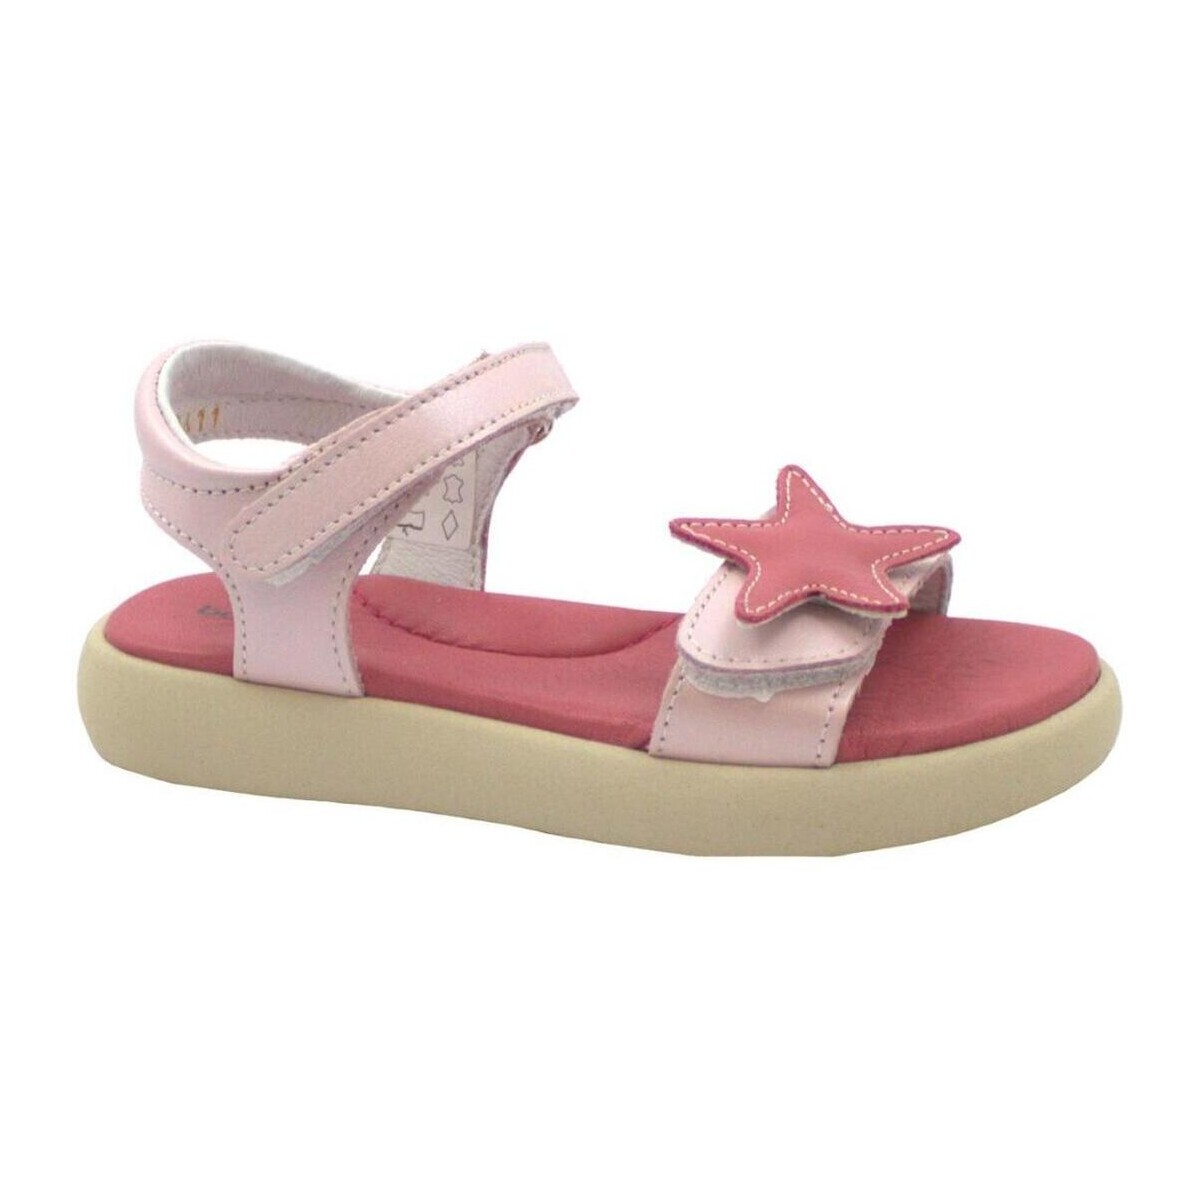 Schoenen Kinderen Sandalen / Open schoenen Balocchi BAL-E23-131411-RO-b Roze